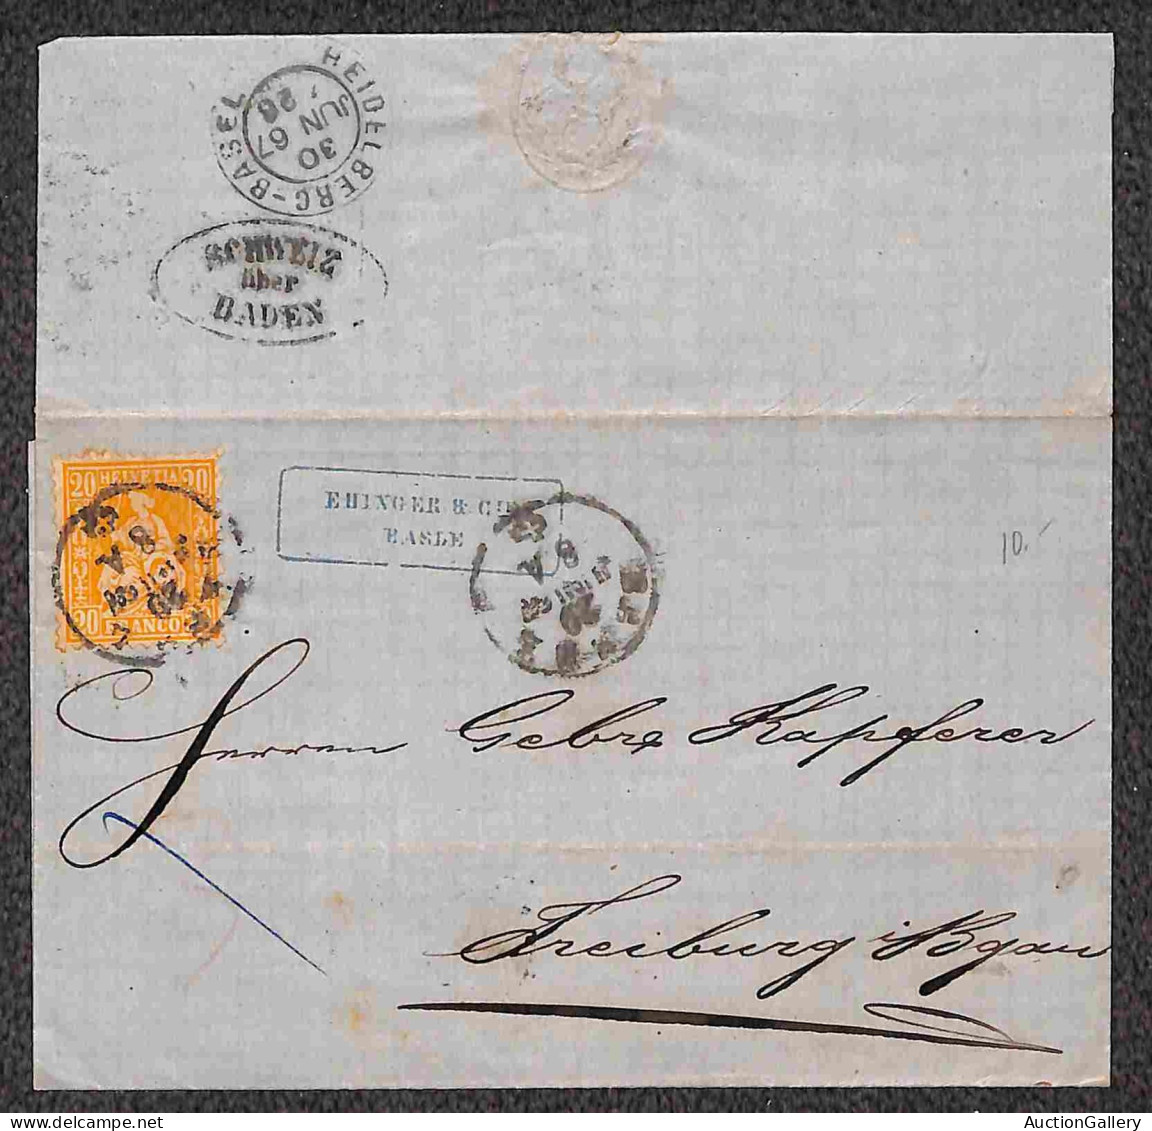 Lotti&Collezioni - Europa&Oltremare - Mondiali - 1867/1935 - Cinque lettere e due cartoline con diverse affrancature del